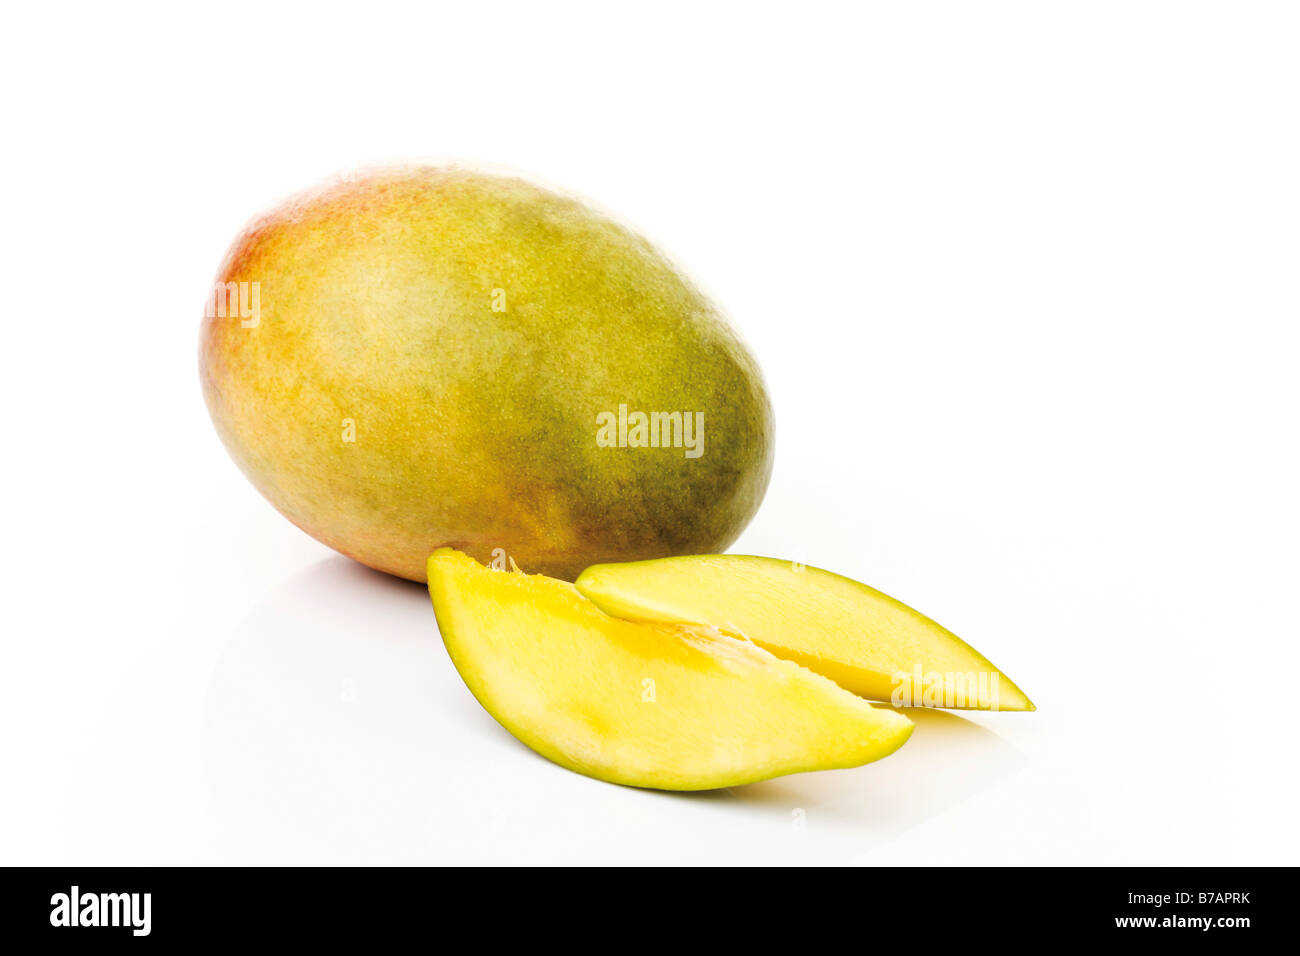 Mango with slices of mango Stock Photo